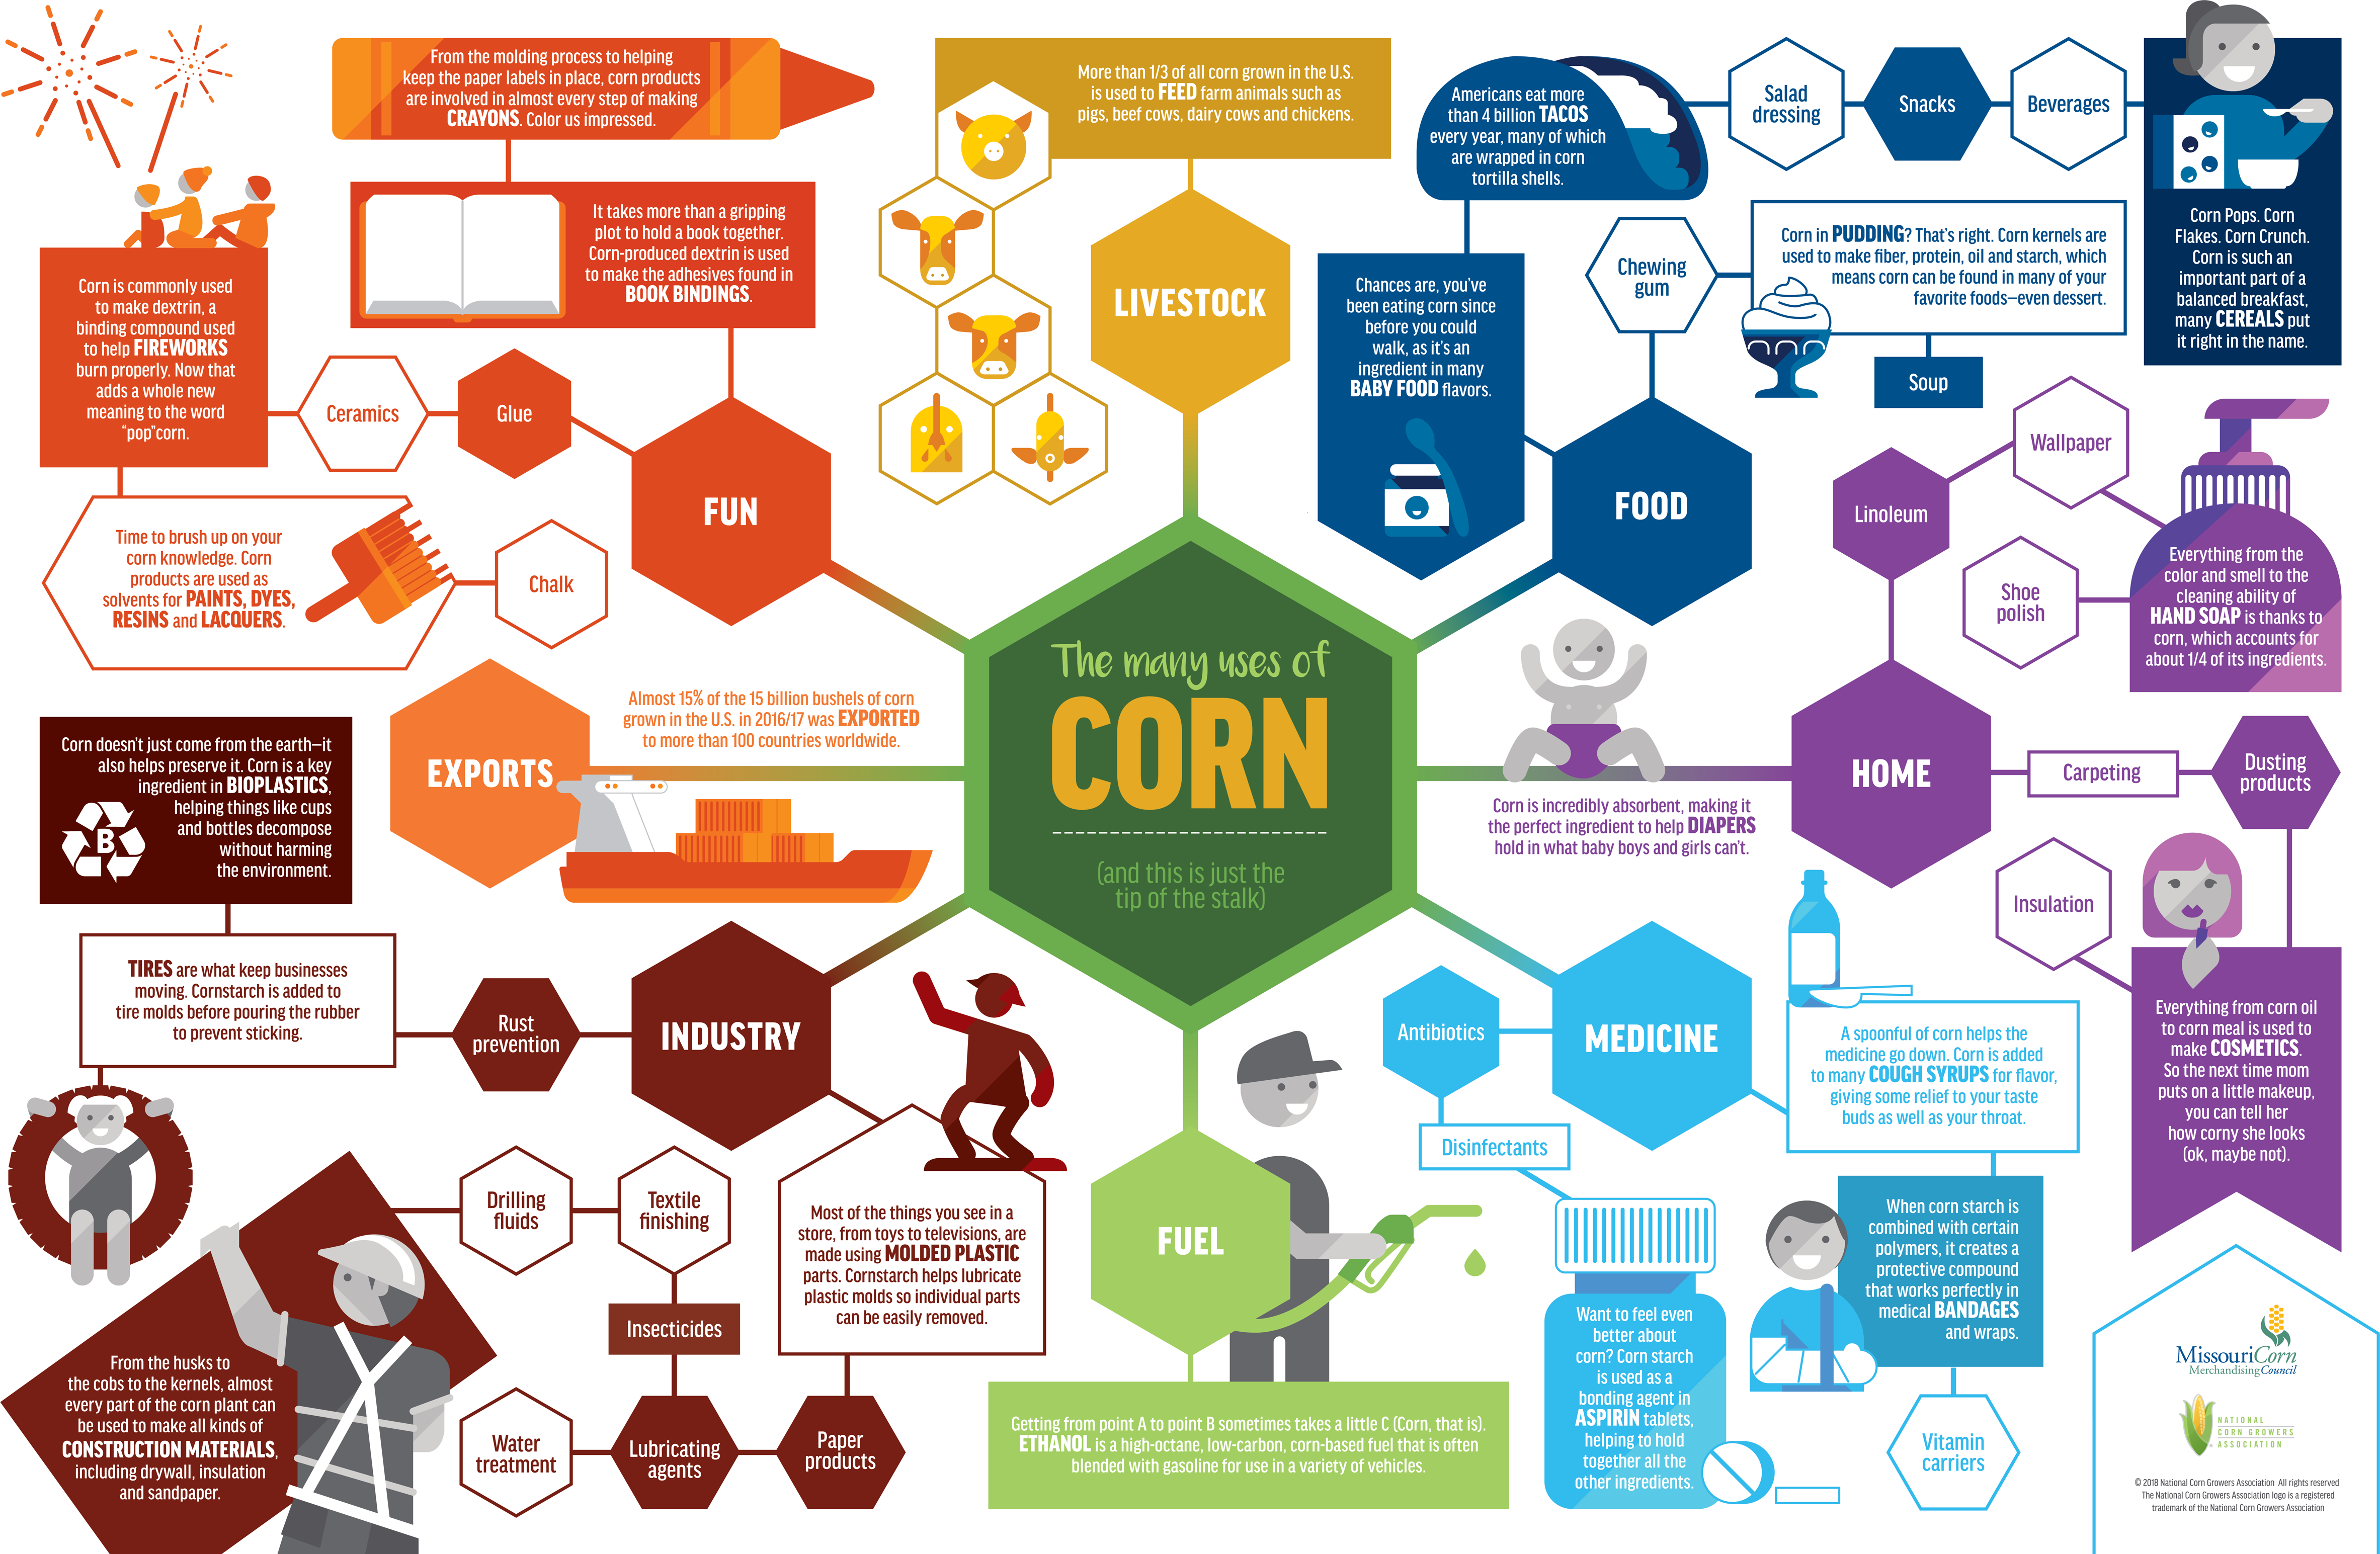 Many uses of GMO Corn